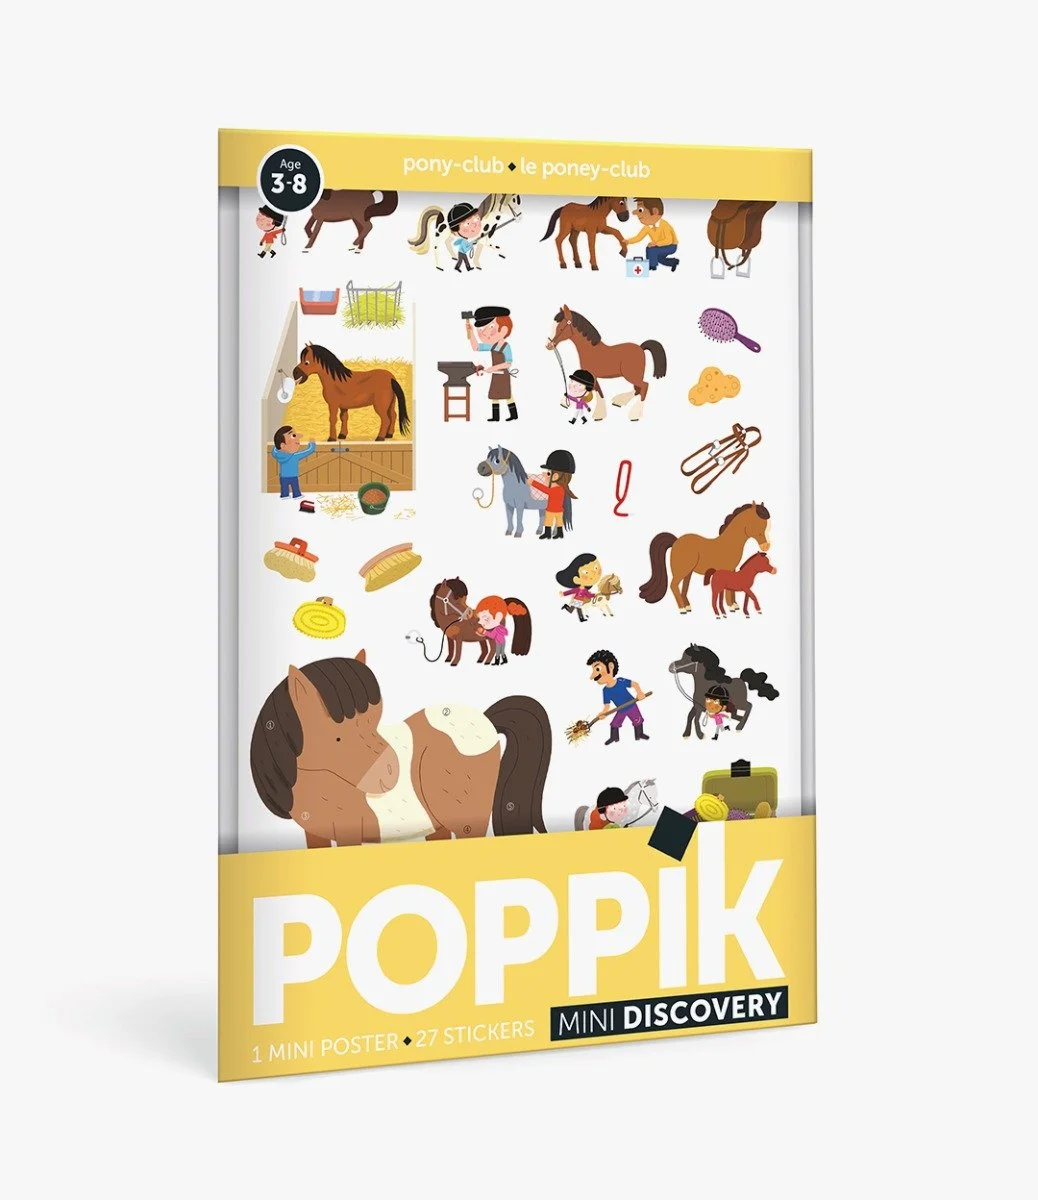 Mini Sticker Poster - The Pony Club (+27 Stickers) by Poppik